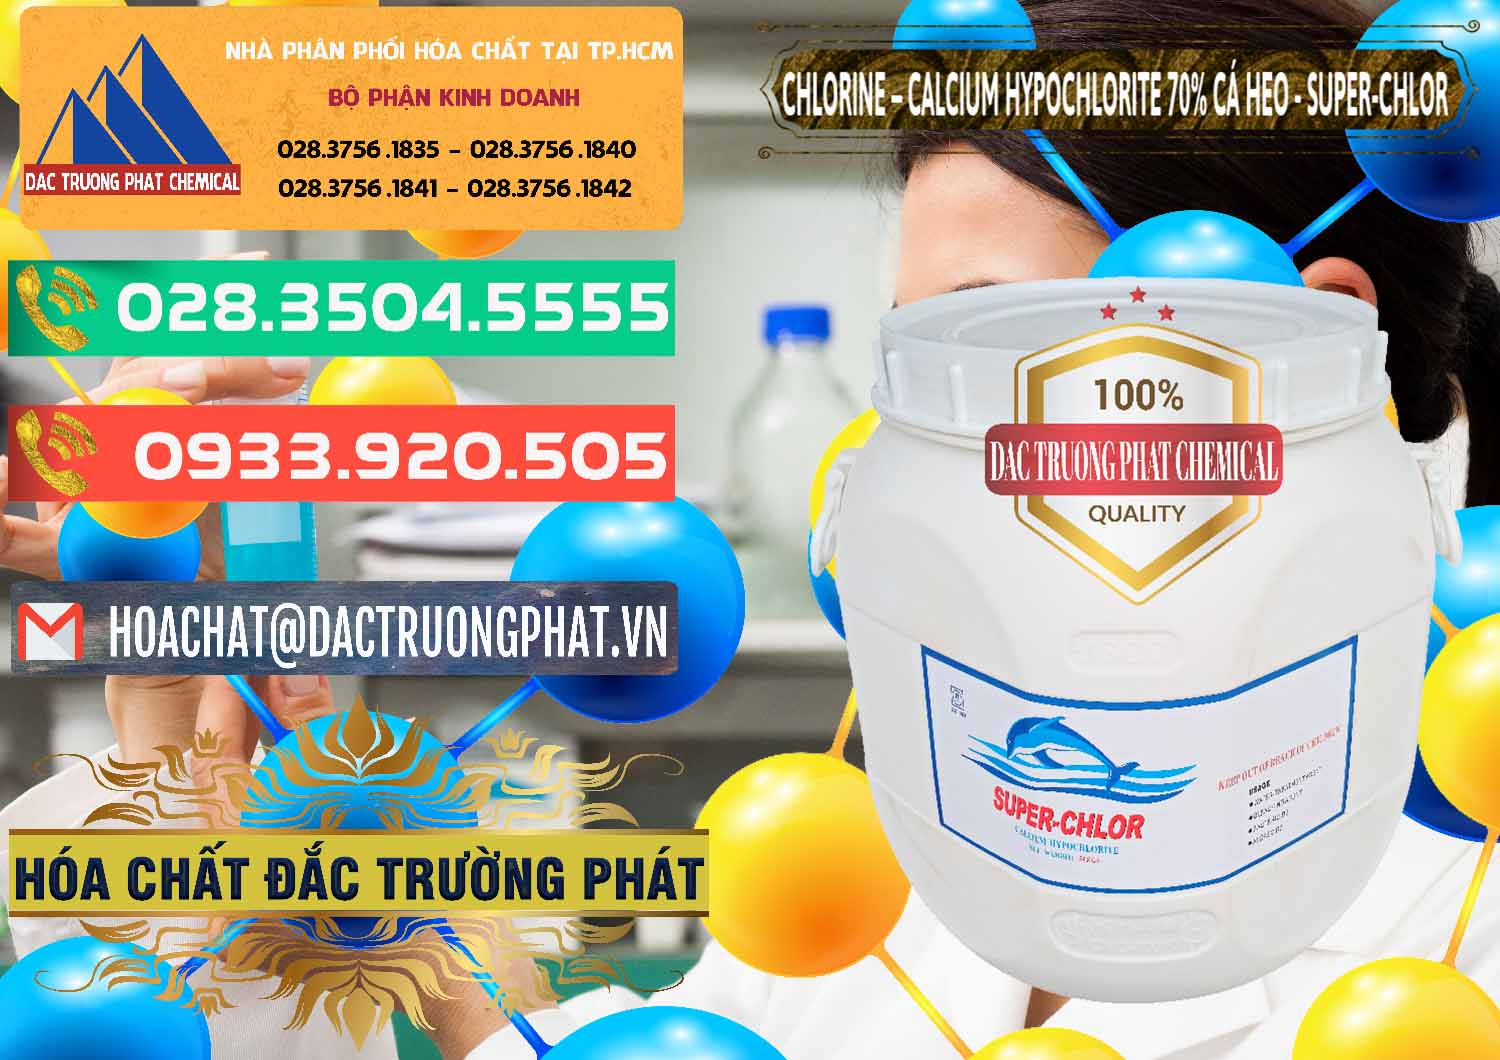 Nơi bán và phân phối Clorin - Chlorine Cá Heo 70% Super Chlor Trung Quốc China - 0058 - Nơi chuyên phân phối & kinh doanh hóa chất tại TP.HCM - congtyhoachat.com.vn